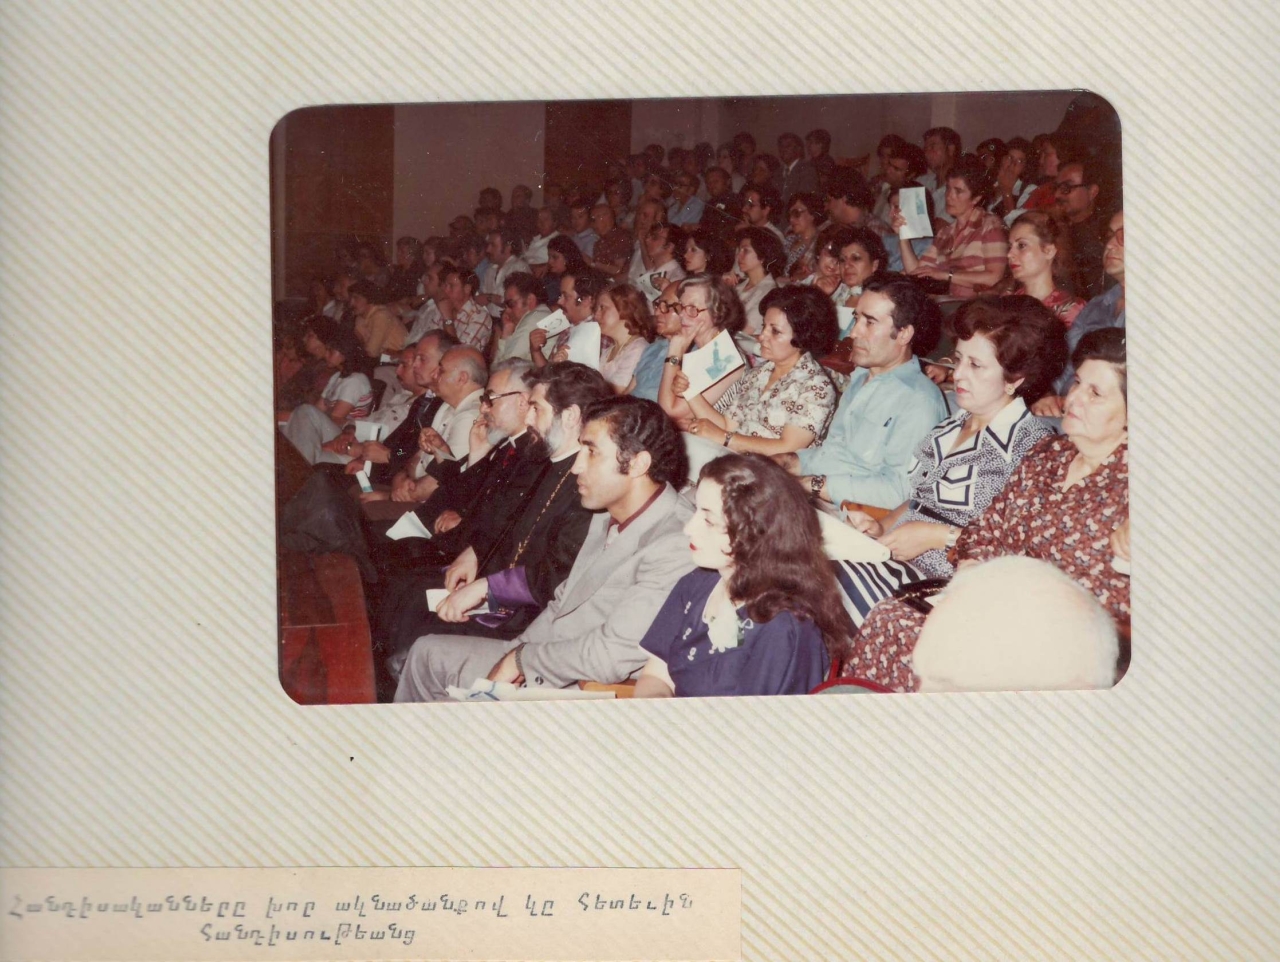 Լուսանկար՝ Սիրիայում Արամ Խաչատրյանի հիշատակին նվիրված համերգի հանդիսատեսը (համերգի լուսանկարների ալբոմից)